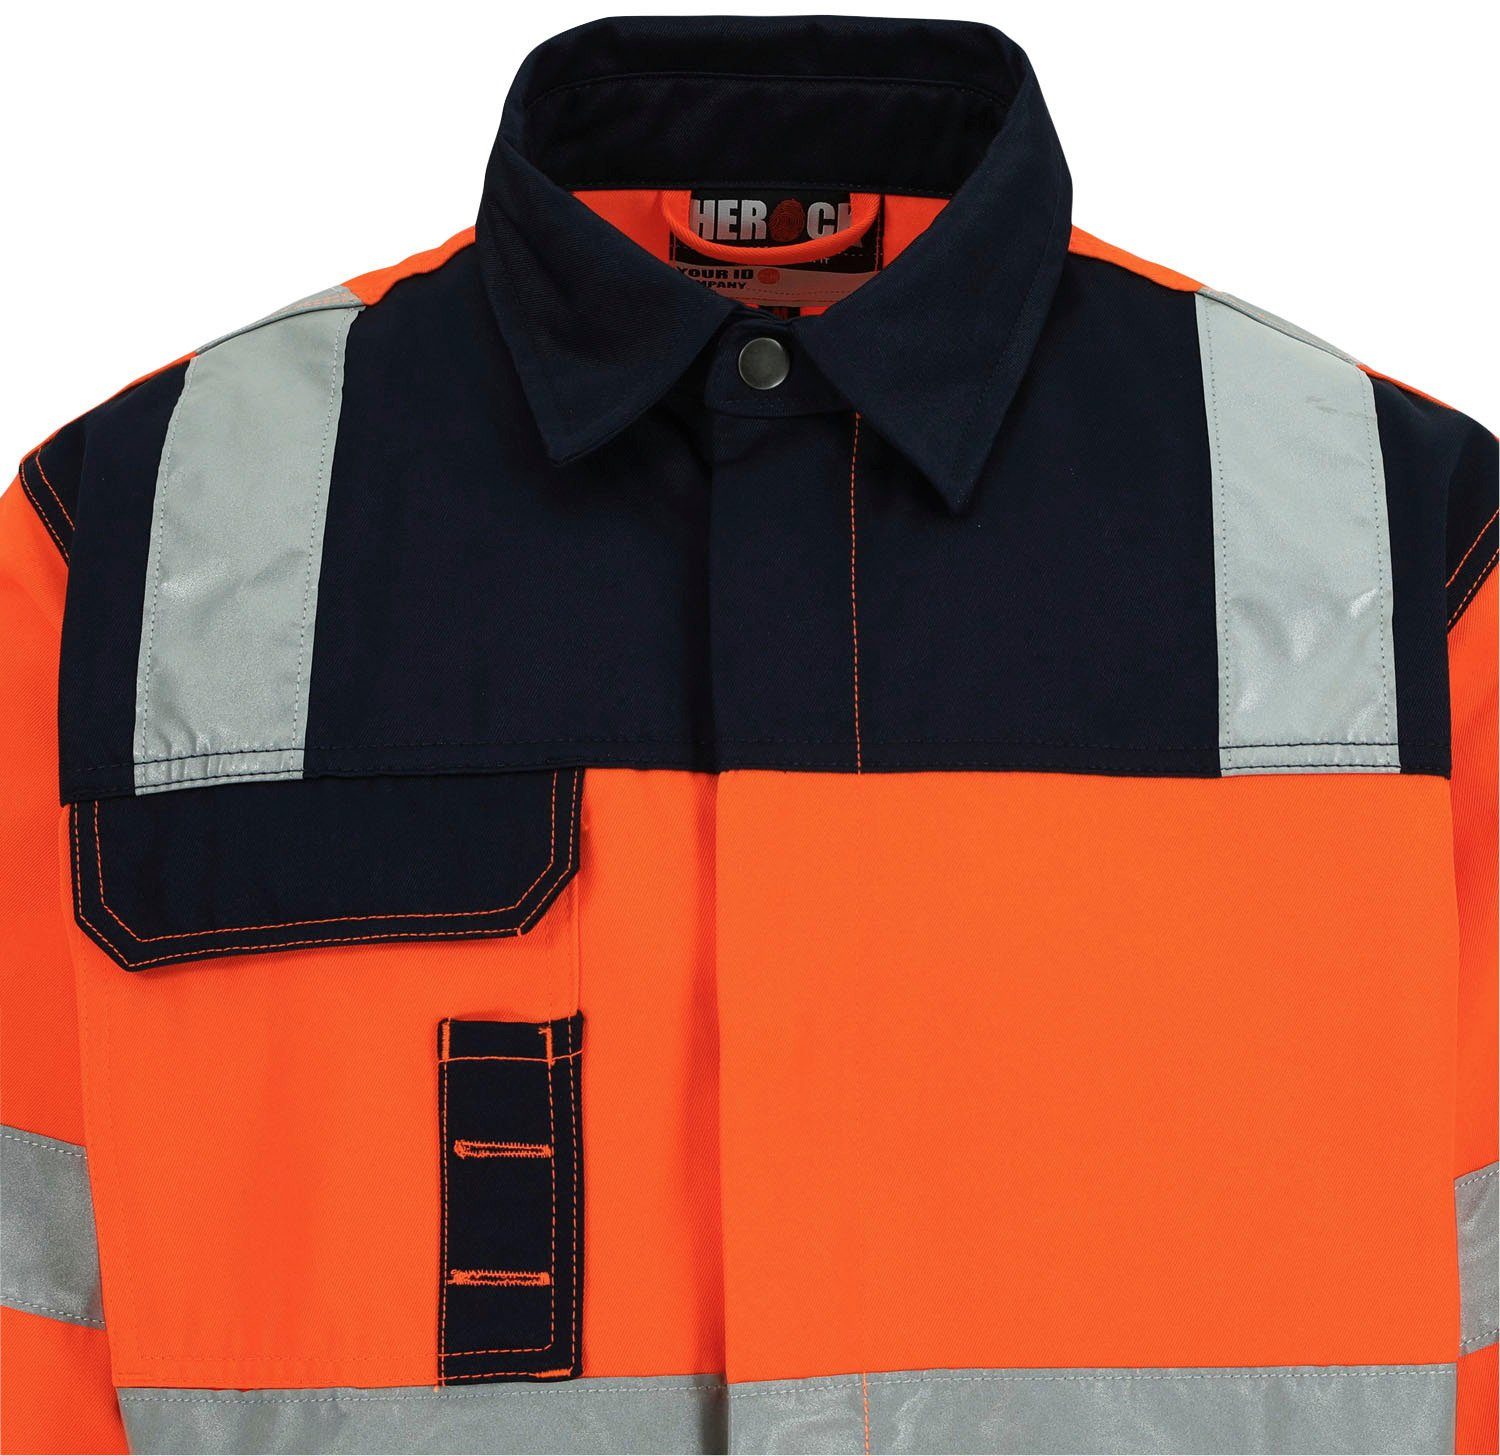 Herock Arbeitsjacke reflektierende Taschen, 5 Bündchen, eintellbare Hydros Bänder Hochsichtbar orange 5cm Hochwertig, Jacke